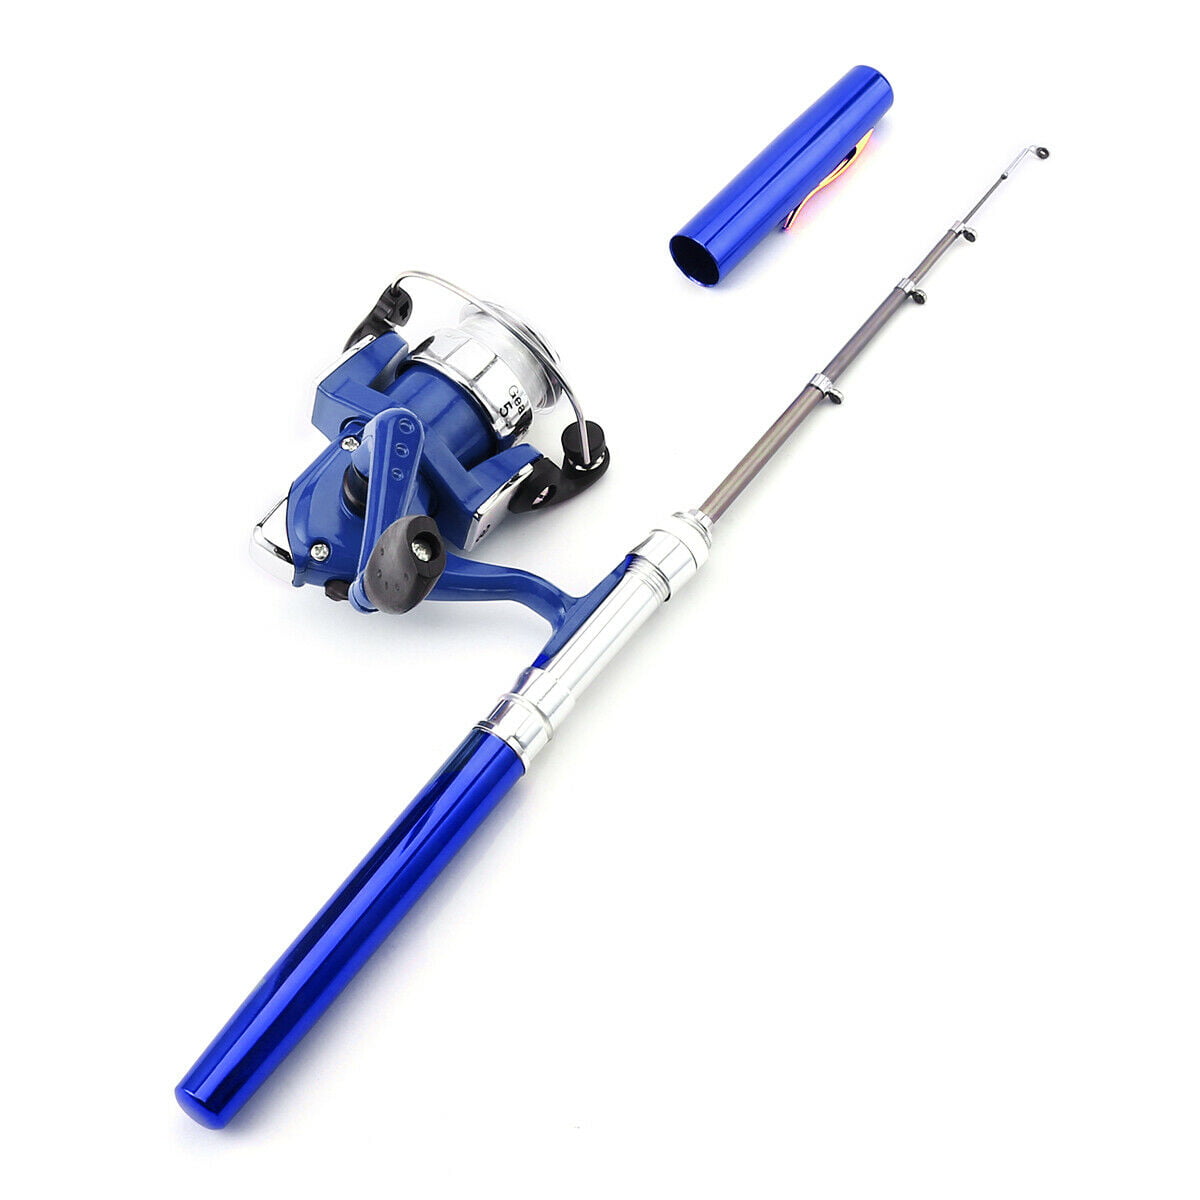 Telescopic Mini Portable Pocket Fish Aluminum Alloy Pen Fishing Rod Pole Reel US 